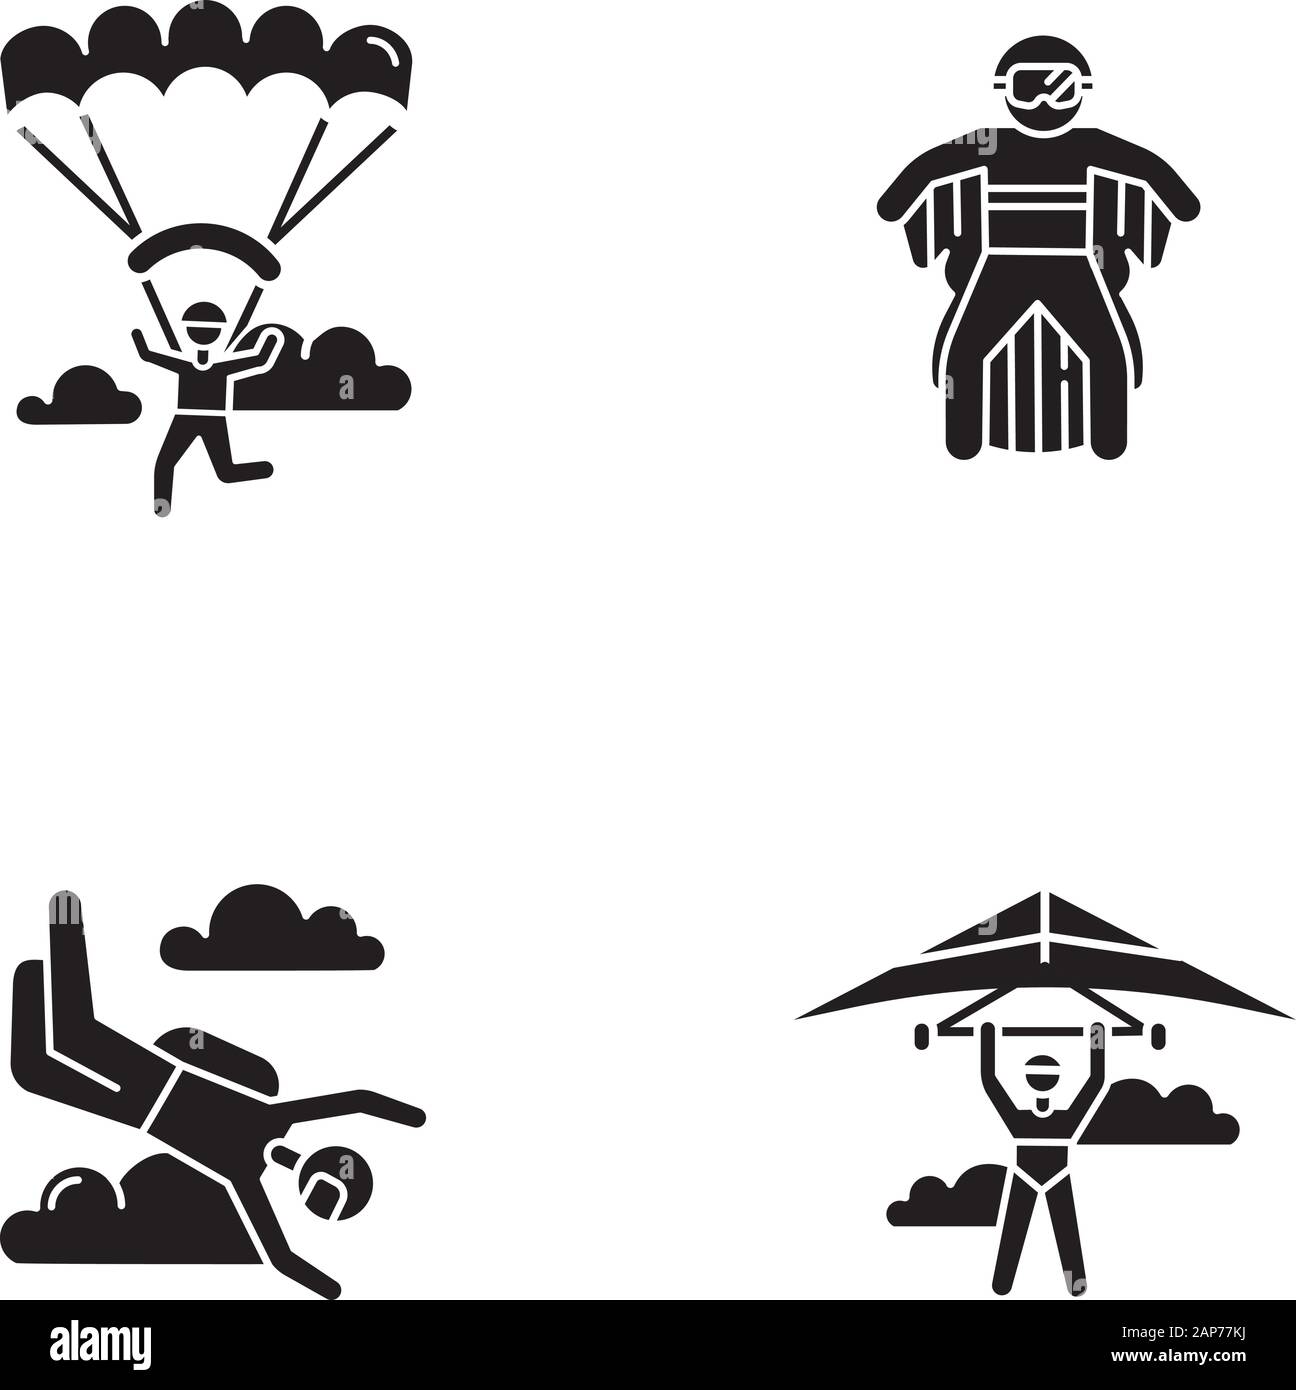 Sport extrême de l'air glyphe icons set. Deltaplane, parachutisme, parapente et correspondant à l'aile. Activités de plein air. L'adrénaline et de divertissement risqué recre Illustration de Vecteur